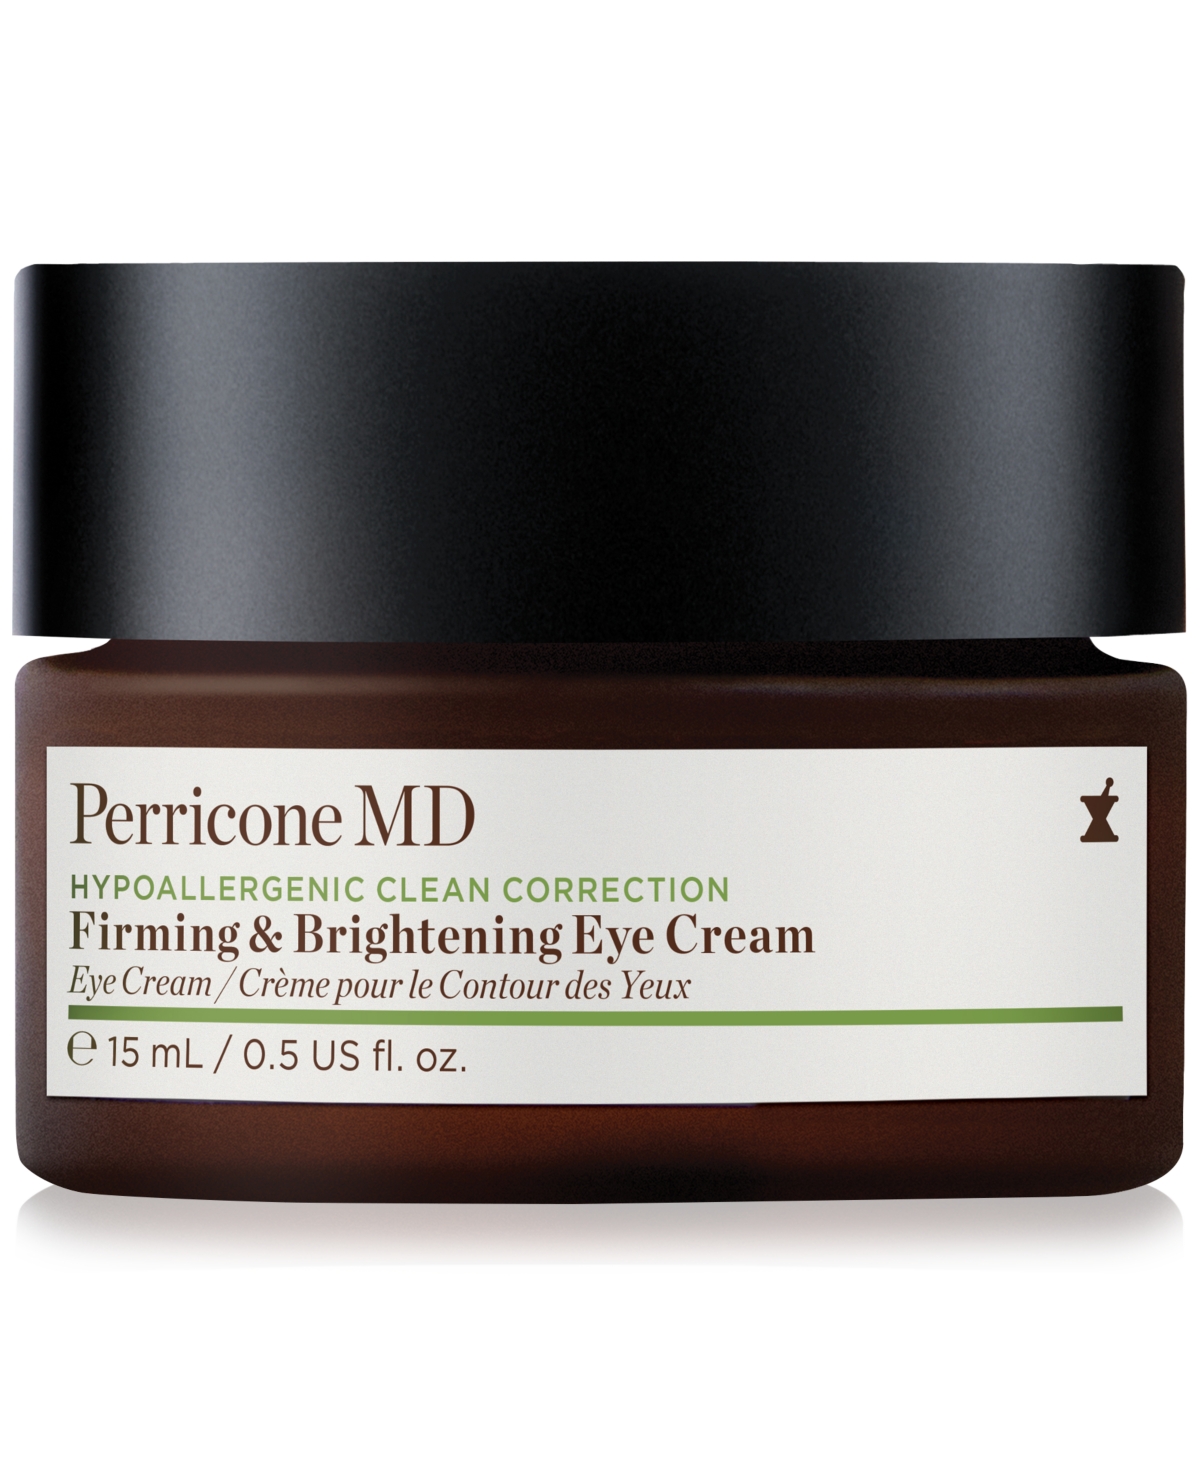 Perricone Md Firming & Brightening Eye Cream, 0.5 Oz.